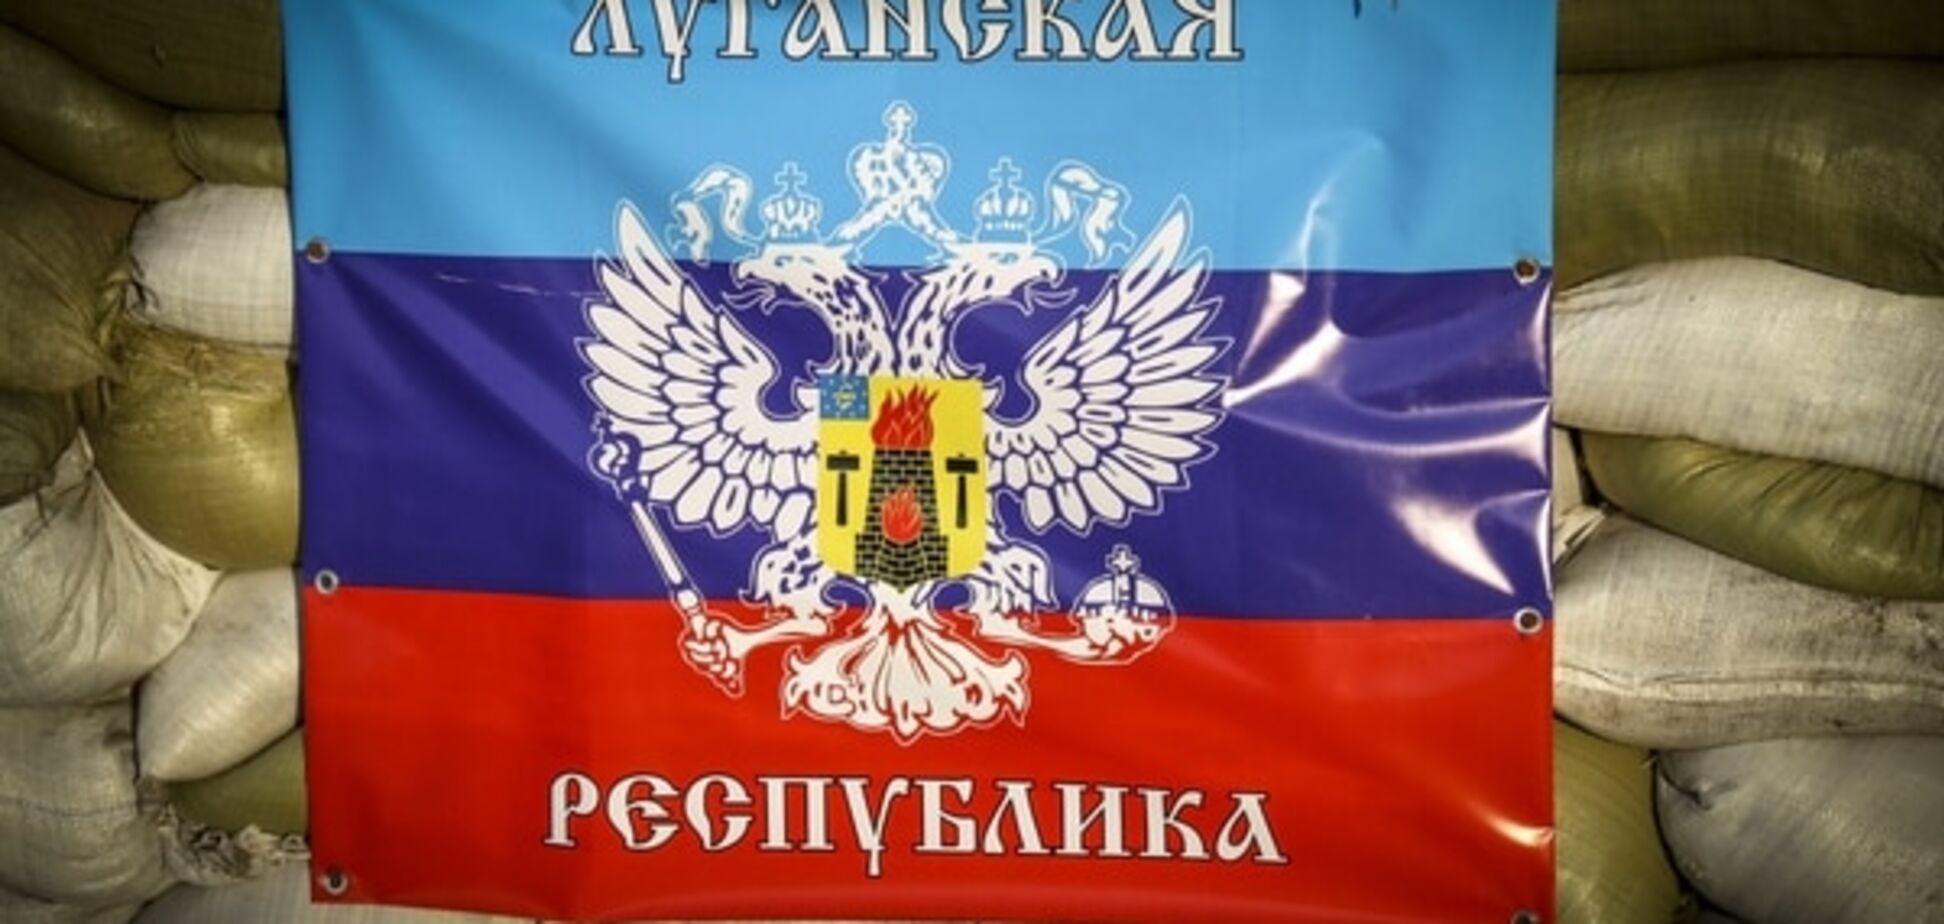 МНС Росії заперечує факт існування 'ЛНР' та 'ДНР'